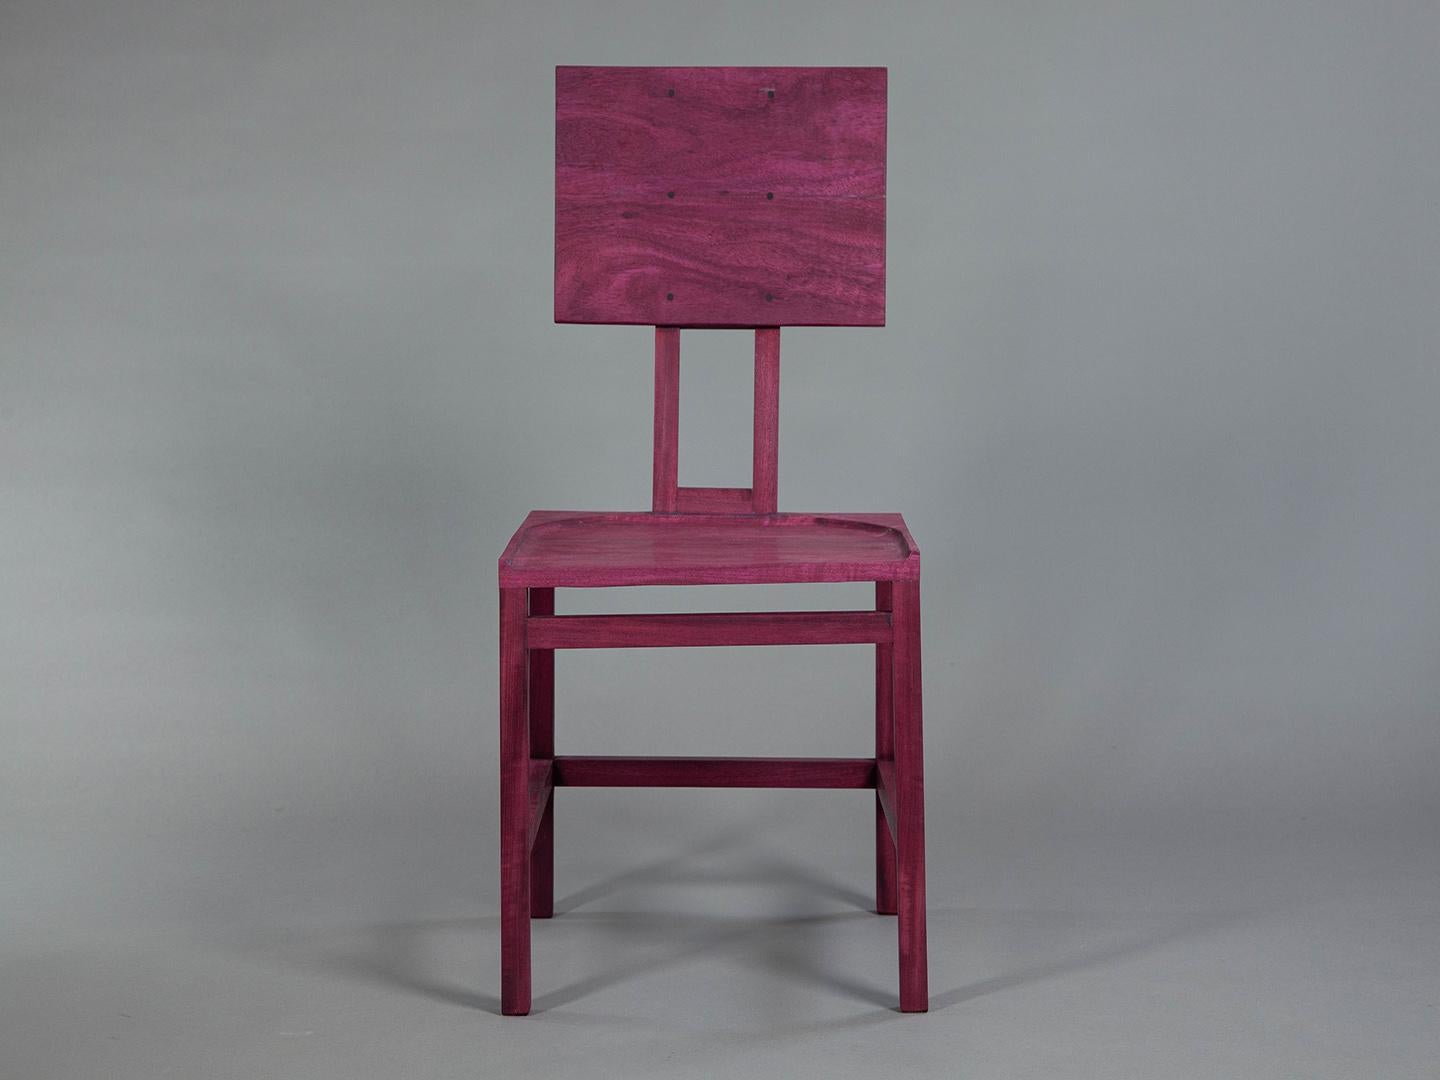 Une chaise entièrement fabriquée en bois massif. Robuste, résistant et confortable, il présente des lignes droites et une assise sculptée. L'intention du designer était de créer une chaise simple, discrète et élégante.

Le designer 
Amilcar Oliveira